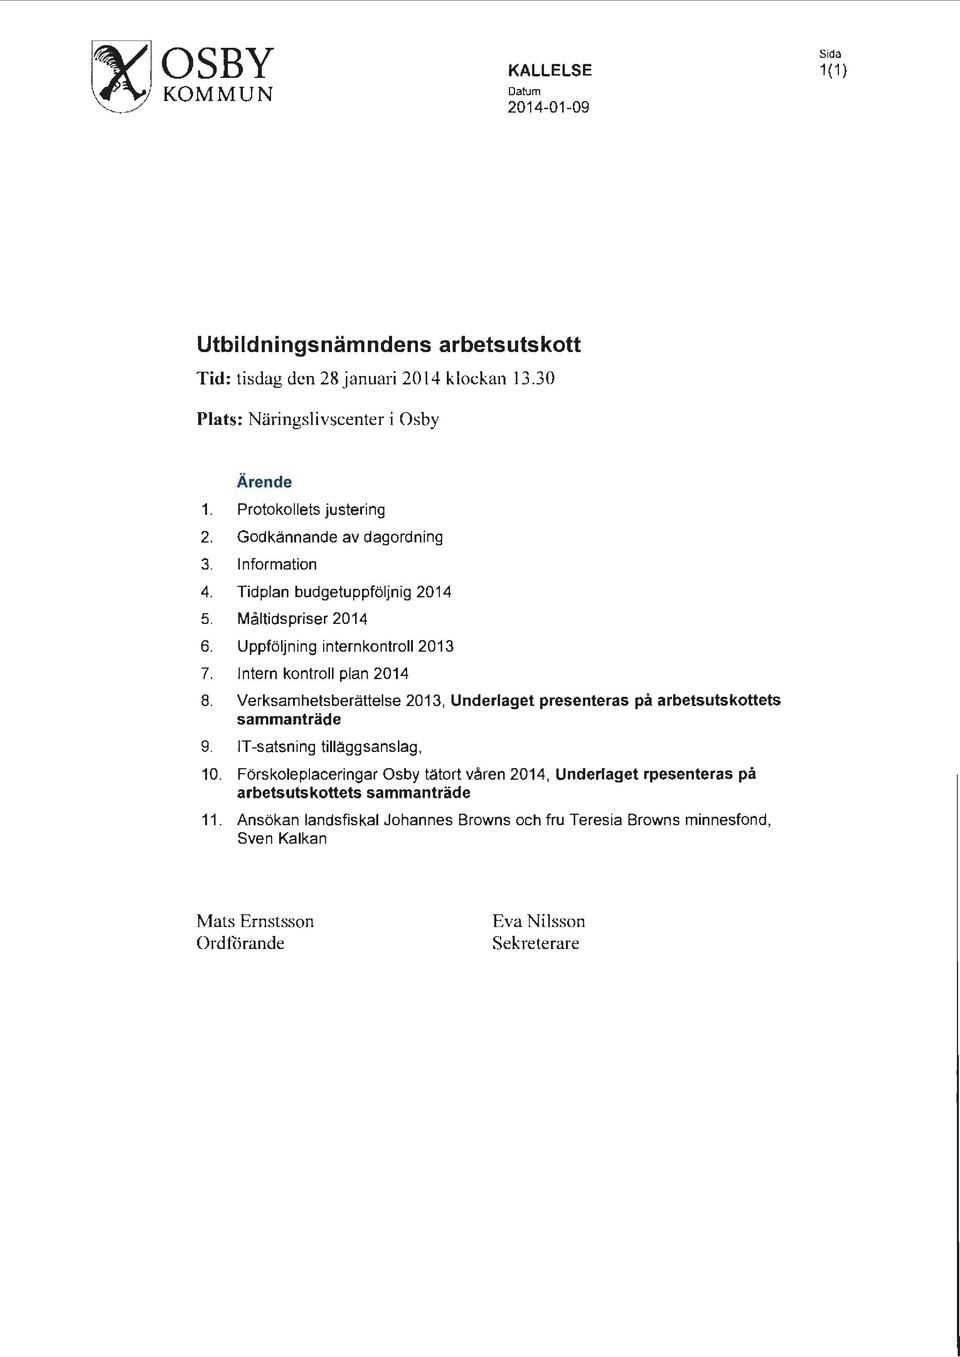 Intern kontroll plan 2014 8. Verksamhetsberättelse 2013, Underlaget presenteras på arbetsutskottets sammanträde 9. IT-satsning tilläggsanslag, 10.